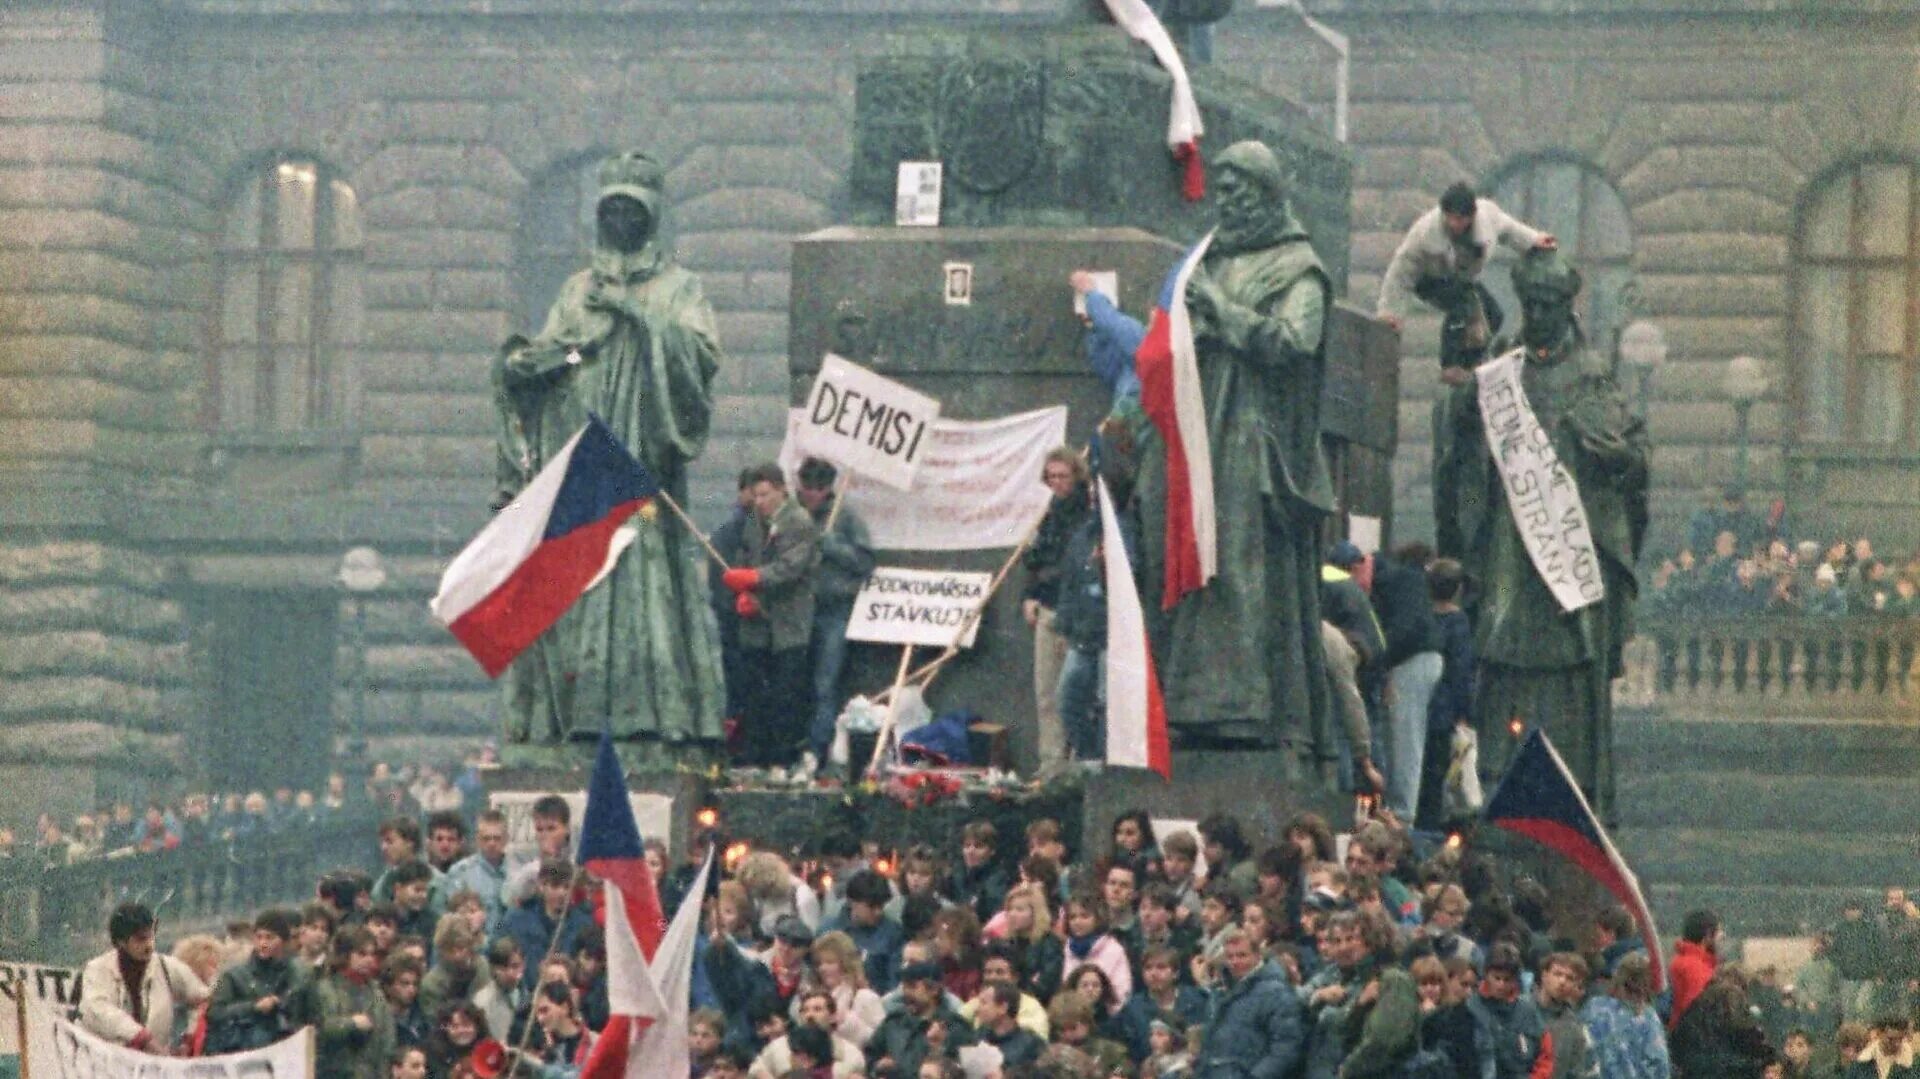 Реформистское брожение в чехословакии началось в 1987. Бархатная революция в Чехословакии. Революция в Чехословакии 1989. Демократическая революция в Чехословакии. Бархатные революции 1989.